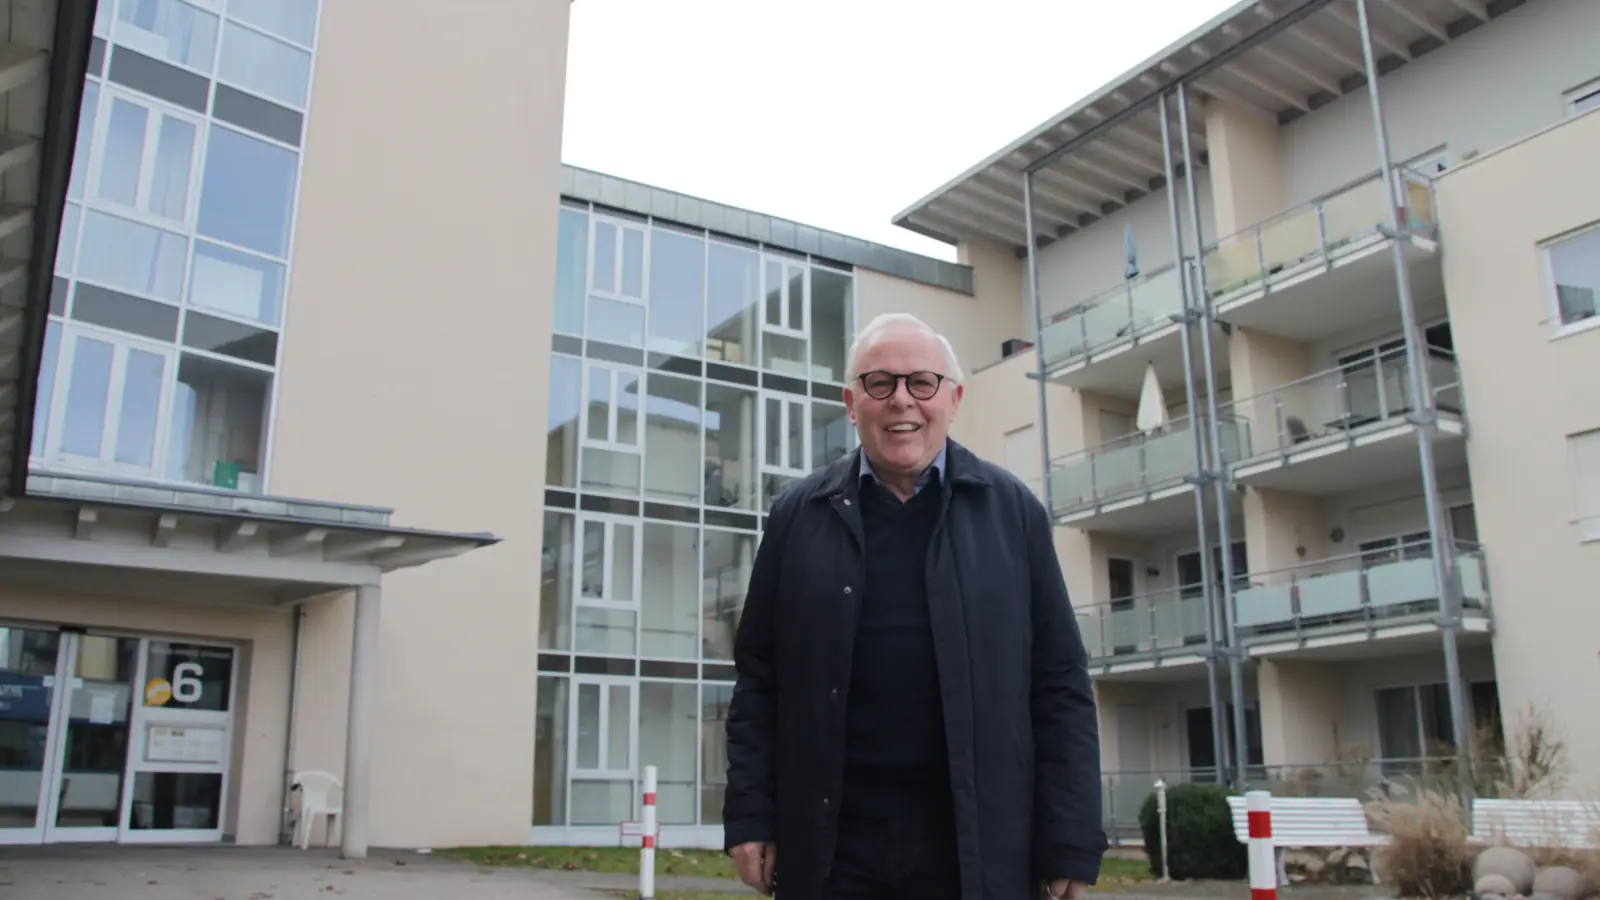 Helmut Hötzl ist überzeugt vom Betreuten Wohnen, das er vor 25 Jahren an der Ecke Heilig-Kreuz- und Louis-Schmetzer-Straße hochgezogen hat. Der 78-Jährige denkt bereits laut über ein weiteres Projekt nach gleichem Muster nach. (Foto: Robert Maurer)